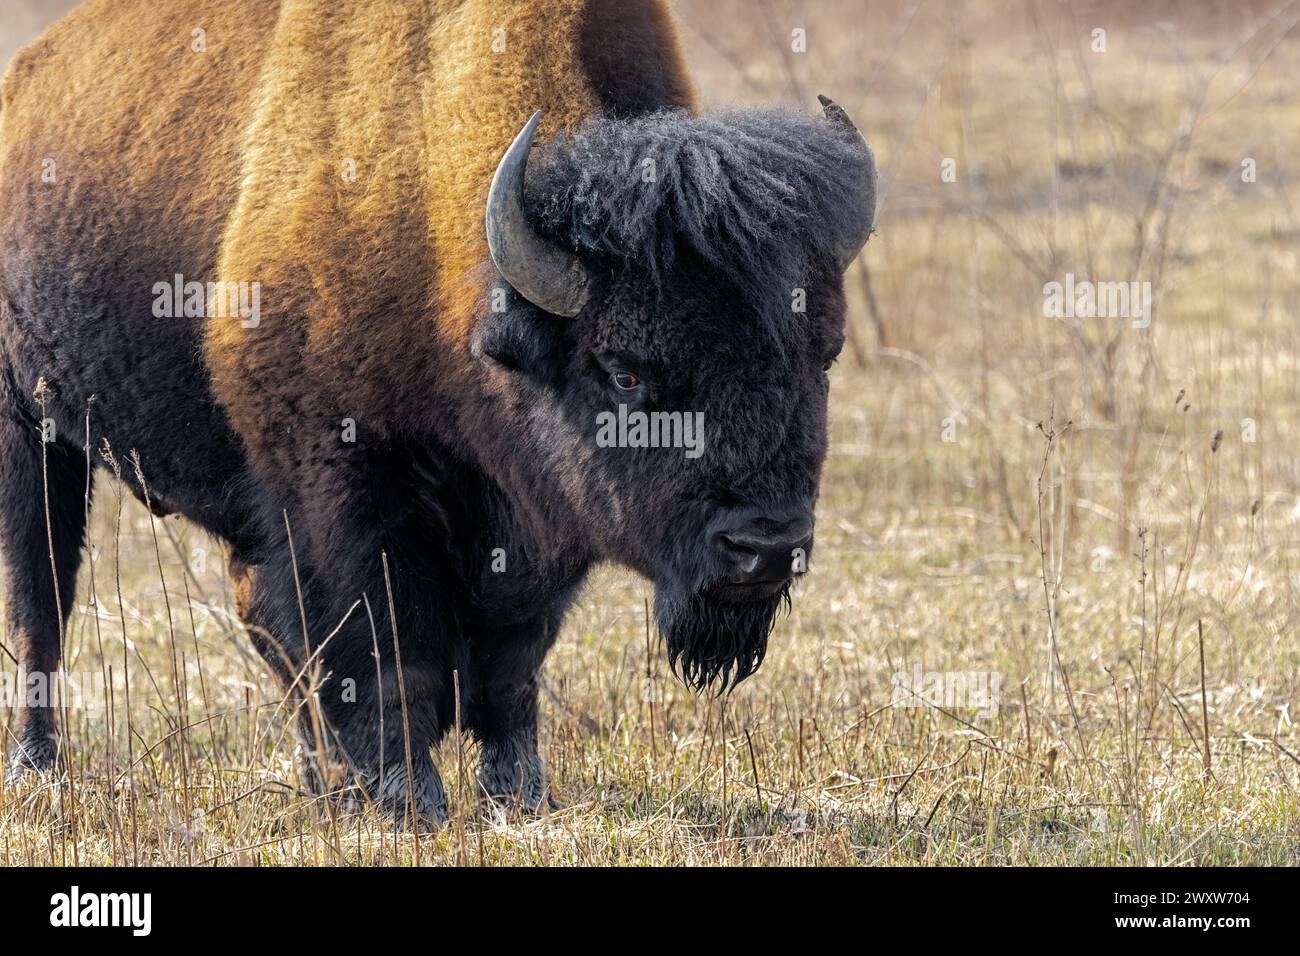 Un bufalo fissa curiosamente il fotografo. Con l'aspetto di pronto per la ricarica, un bisonte mostra i dettagli dei suoi avvisatori acustici e la struttura della superficie o Foto Stock